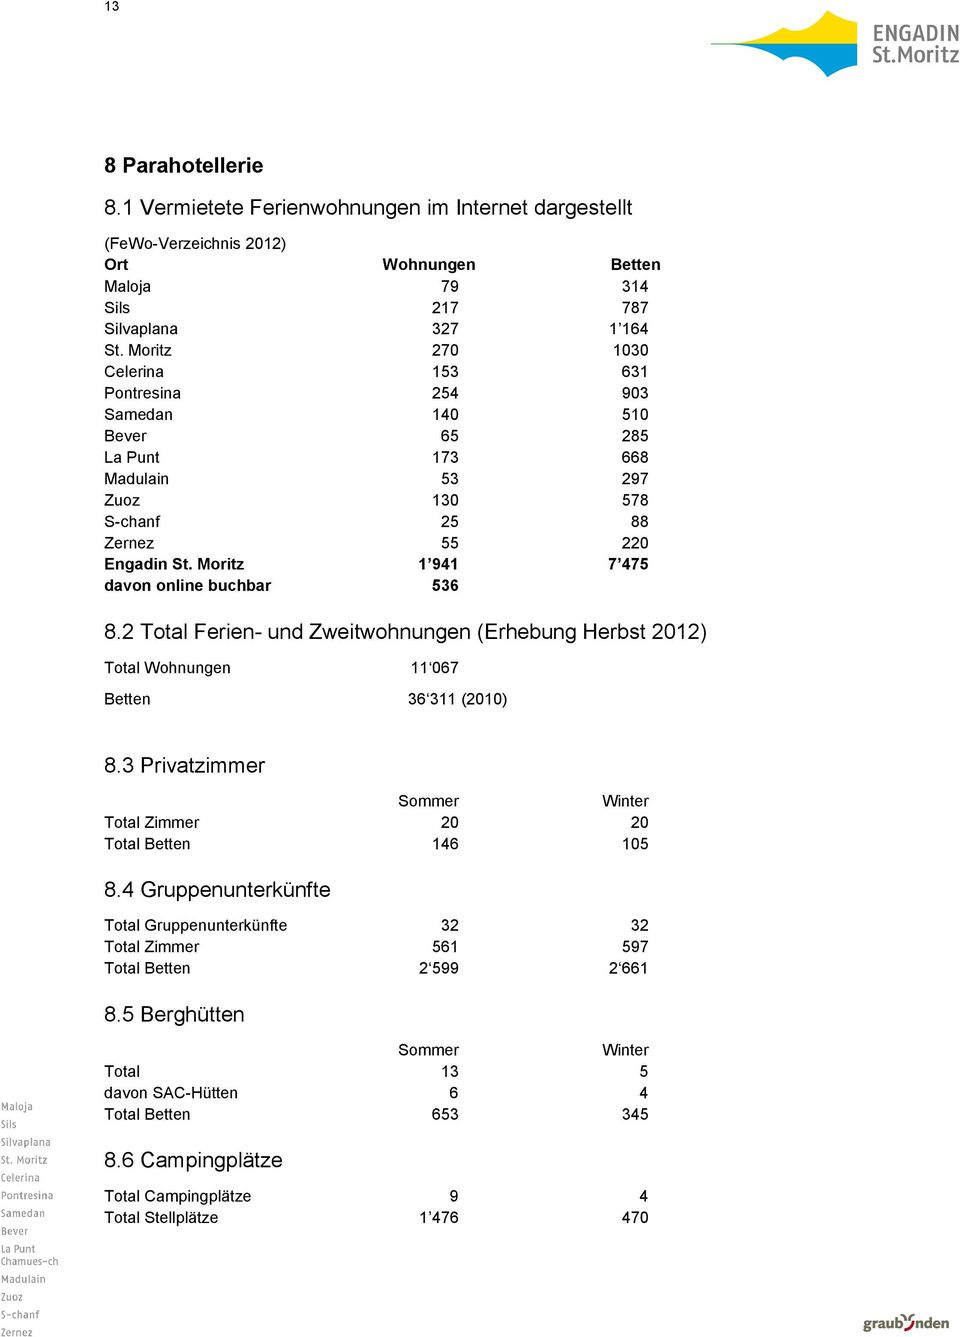 Moritz 1 941 7 475 davon online buchbar 536 8.2 Total Ferien- und Zweitwohnungen (Erhebung Herbst 2012) Total Wohnungen 11 067 Betten 36 311 (2010) 8.